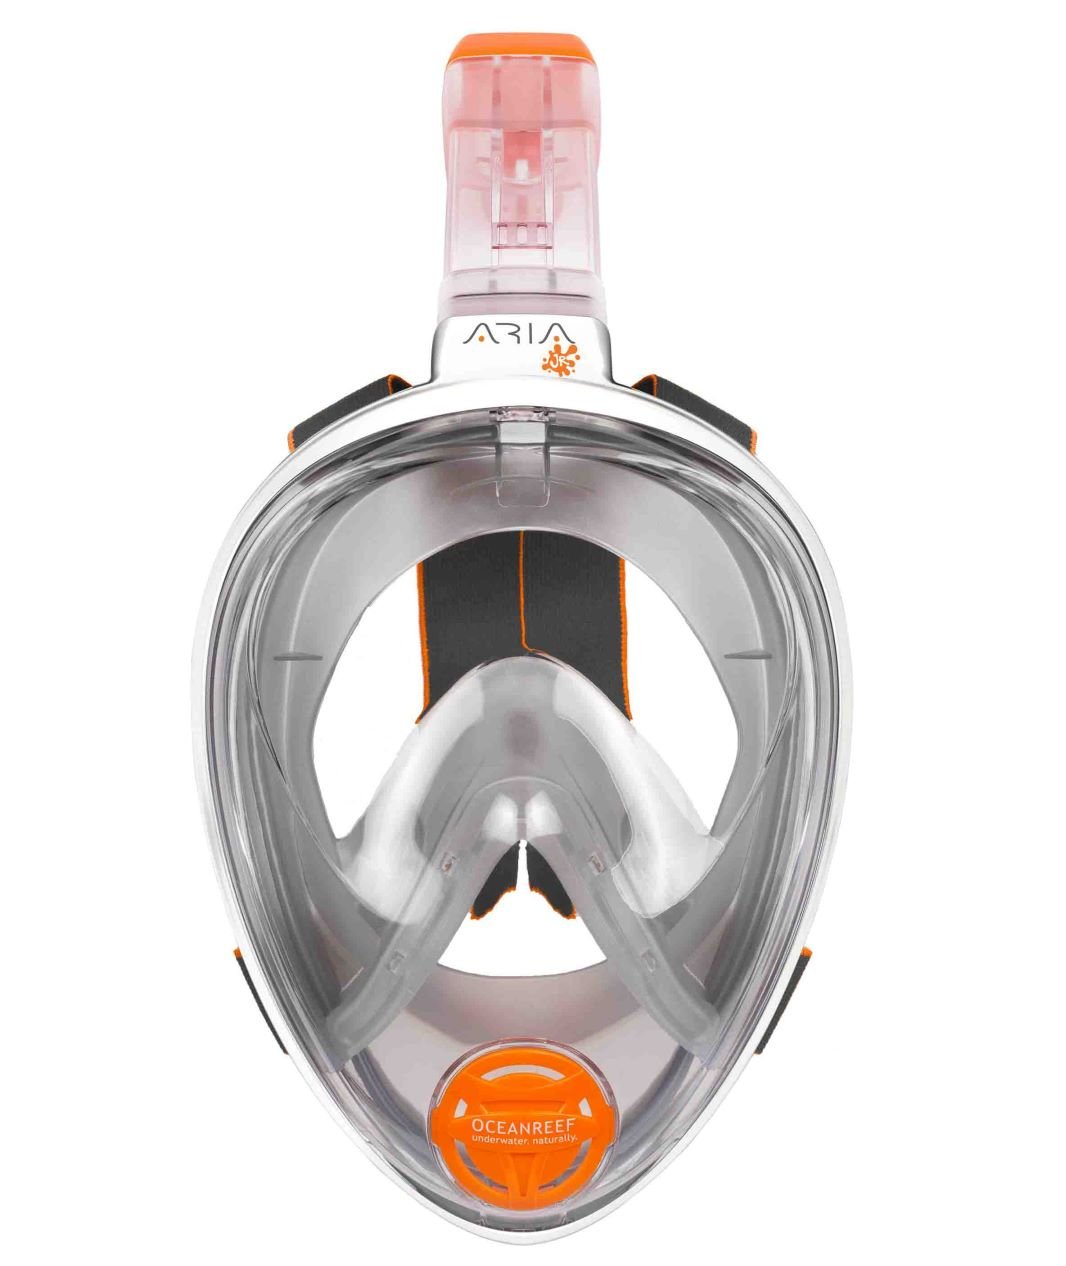 Celoobličejová šnorchlovací maska pro děti ARIA JUNIOR XS